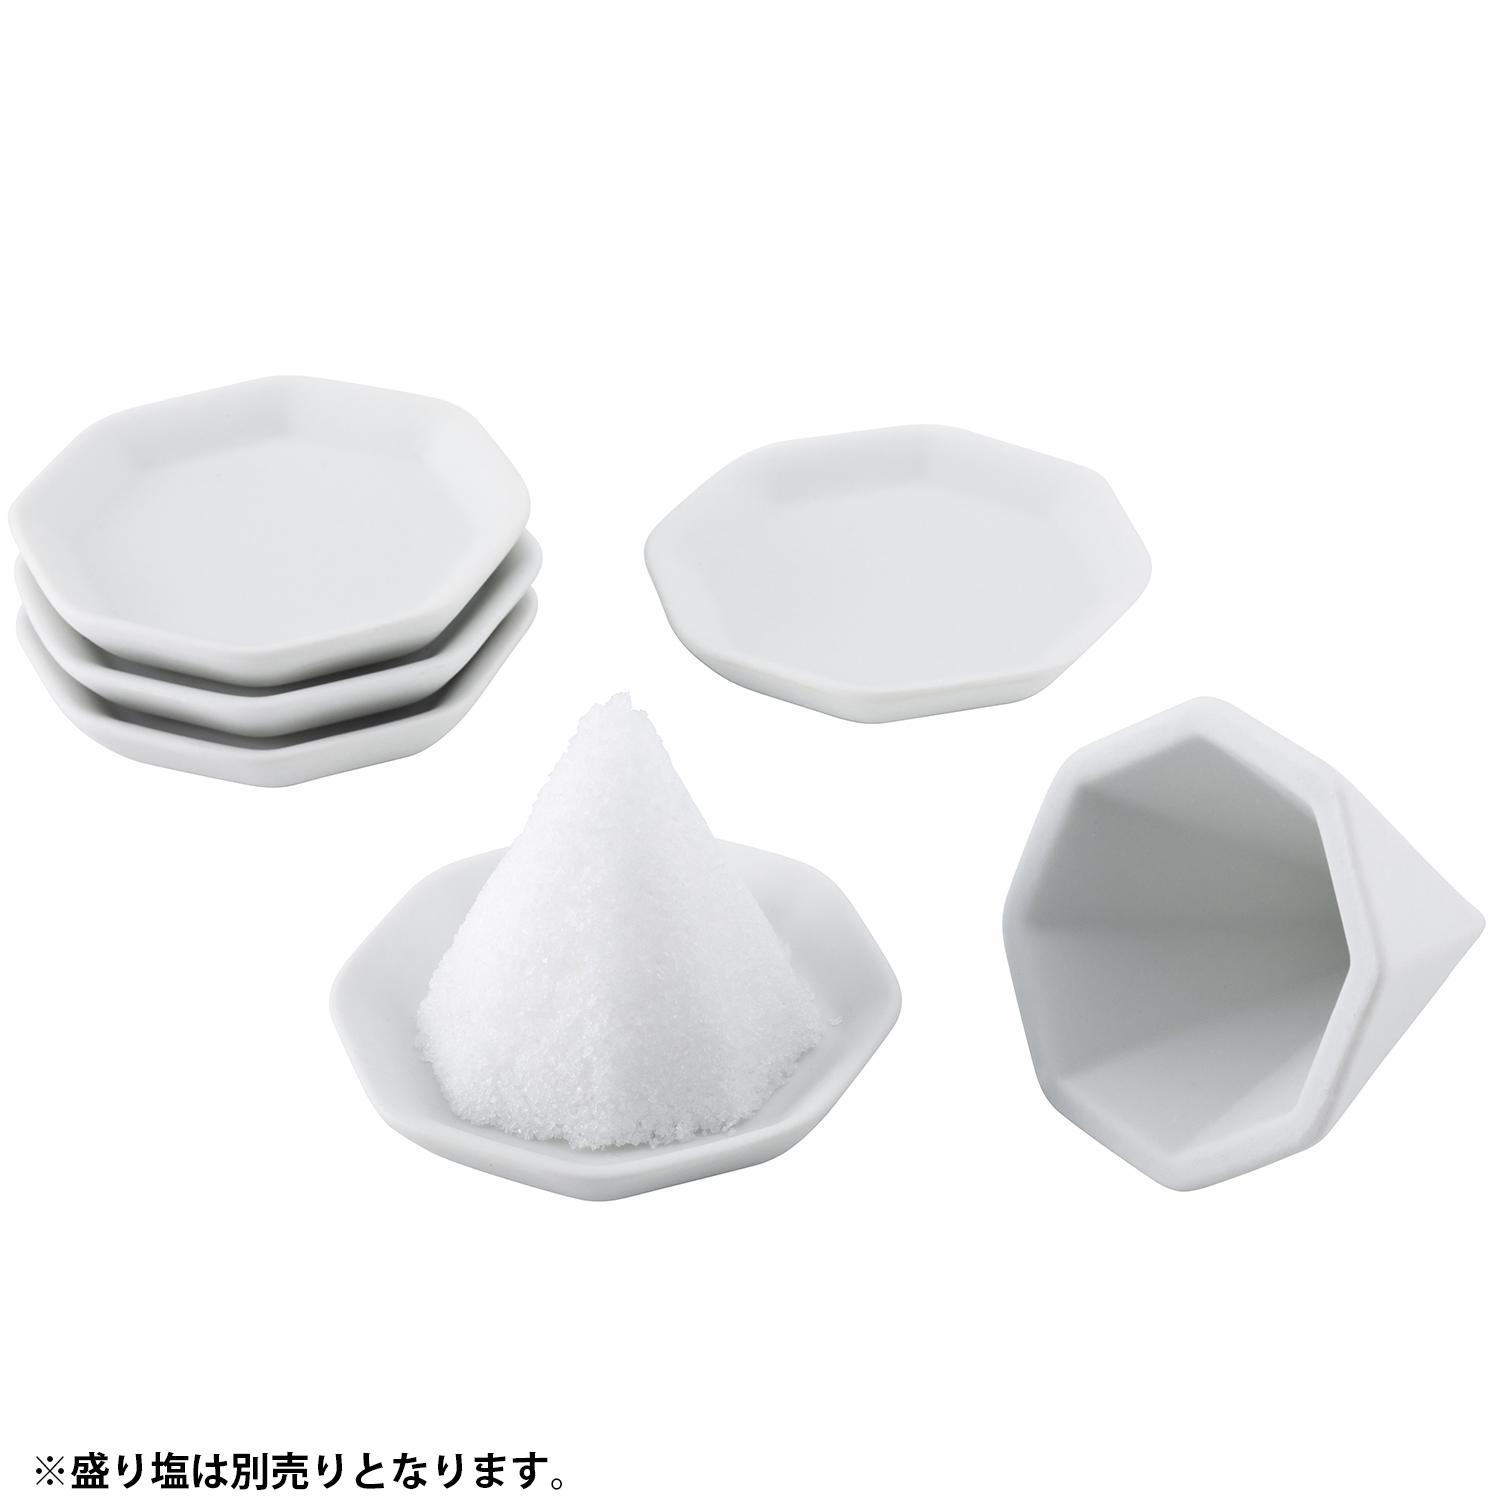 【送料無料】神棚の里 八角盛り塩用セット 小 素焼き八角皿5枚